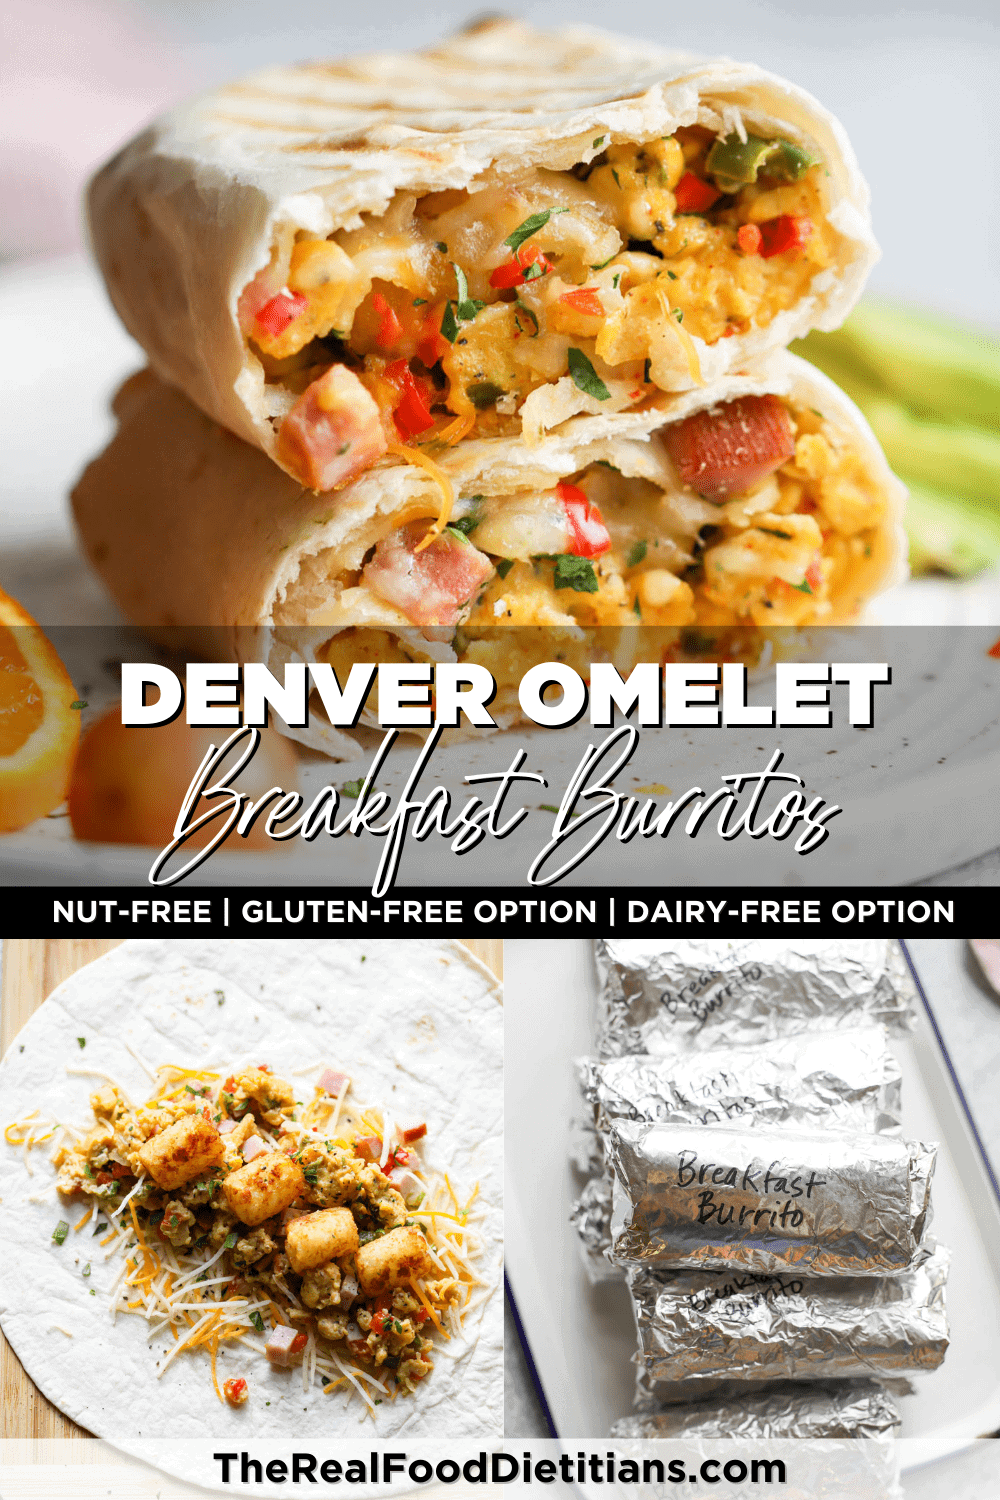 Denver Omelet Breakfast Burritos 1000x1500 1